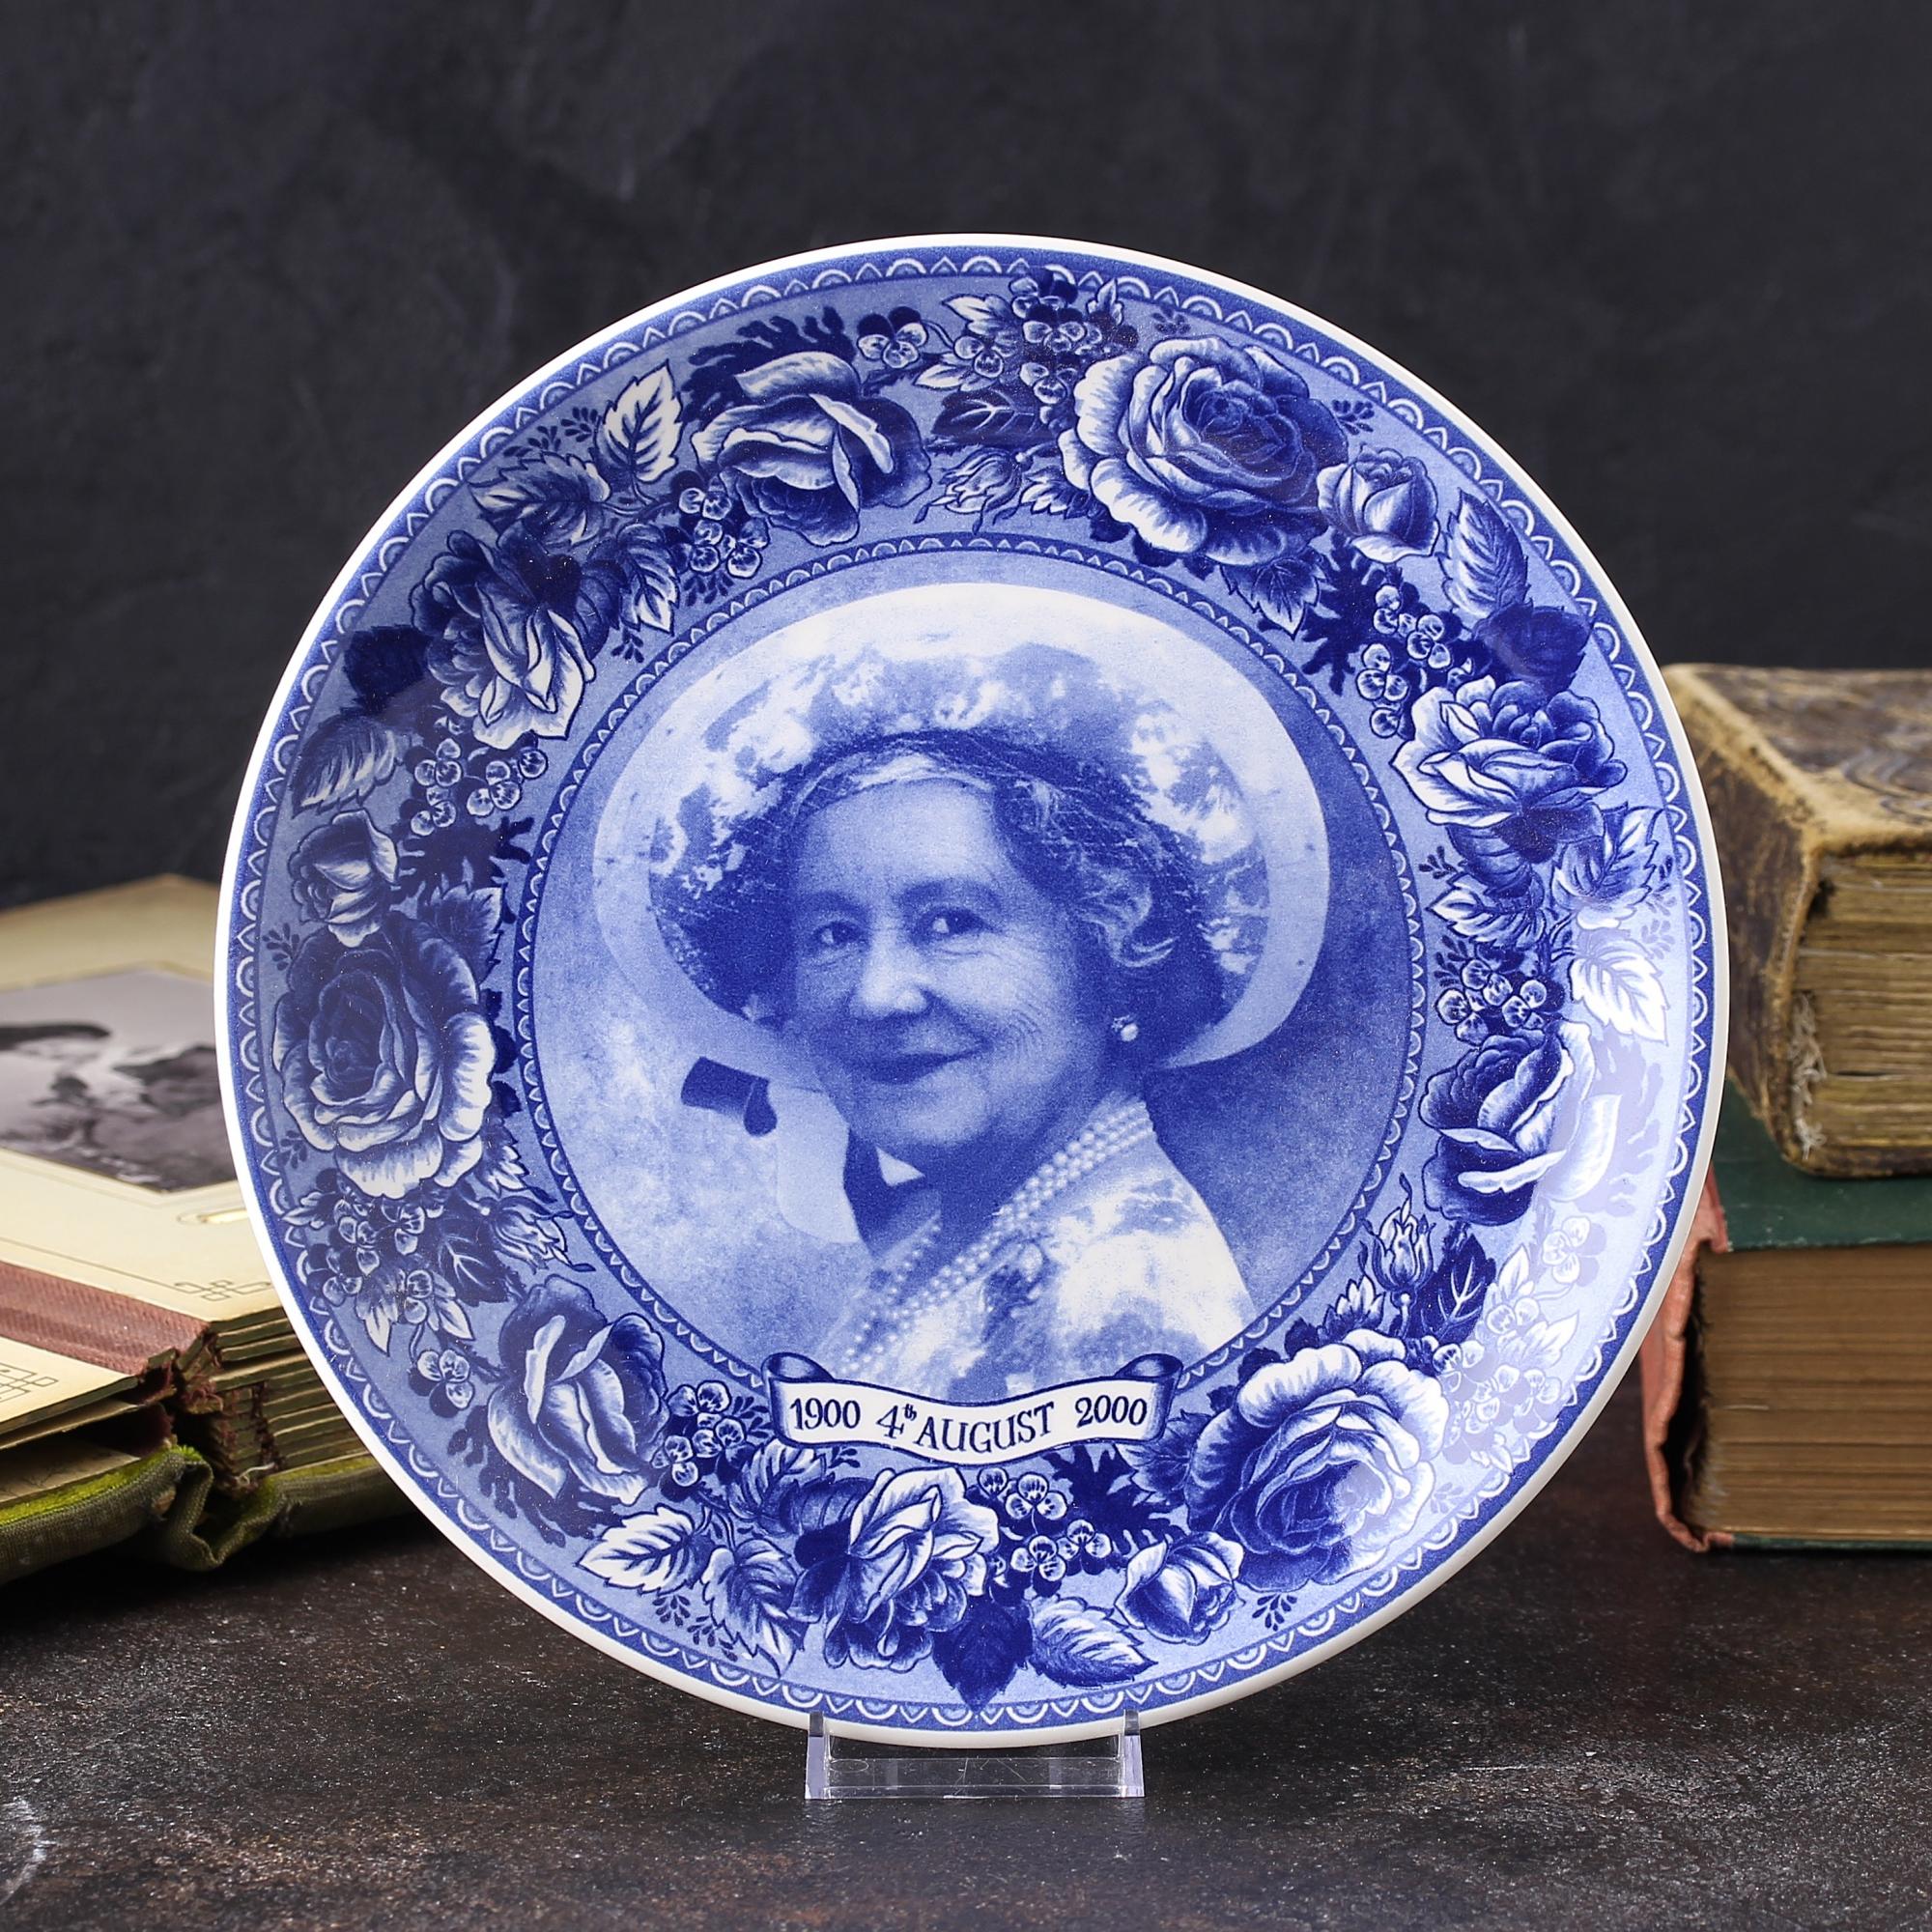 Тарелка винтажная декоративная настенная Англия Королева мать Елизавета Юбилей Веджвуд Wedgwood Queen Mother Centenary 1900-2000